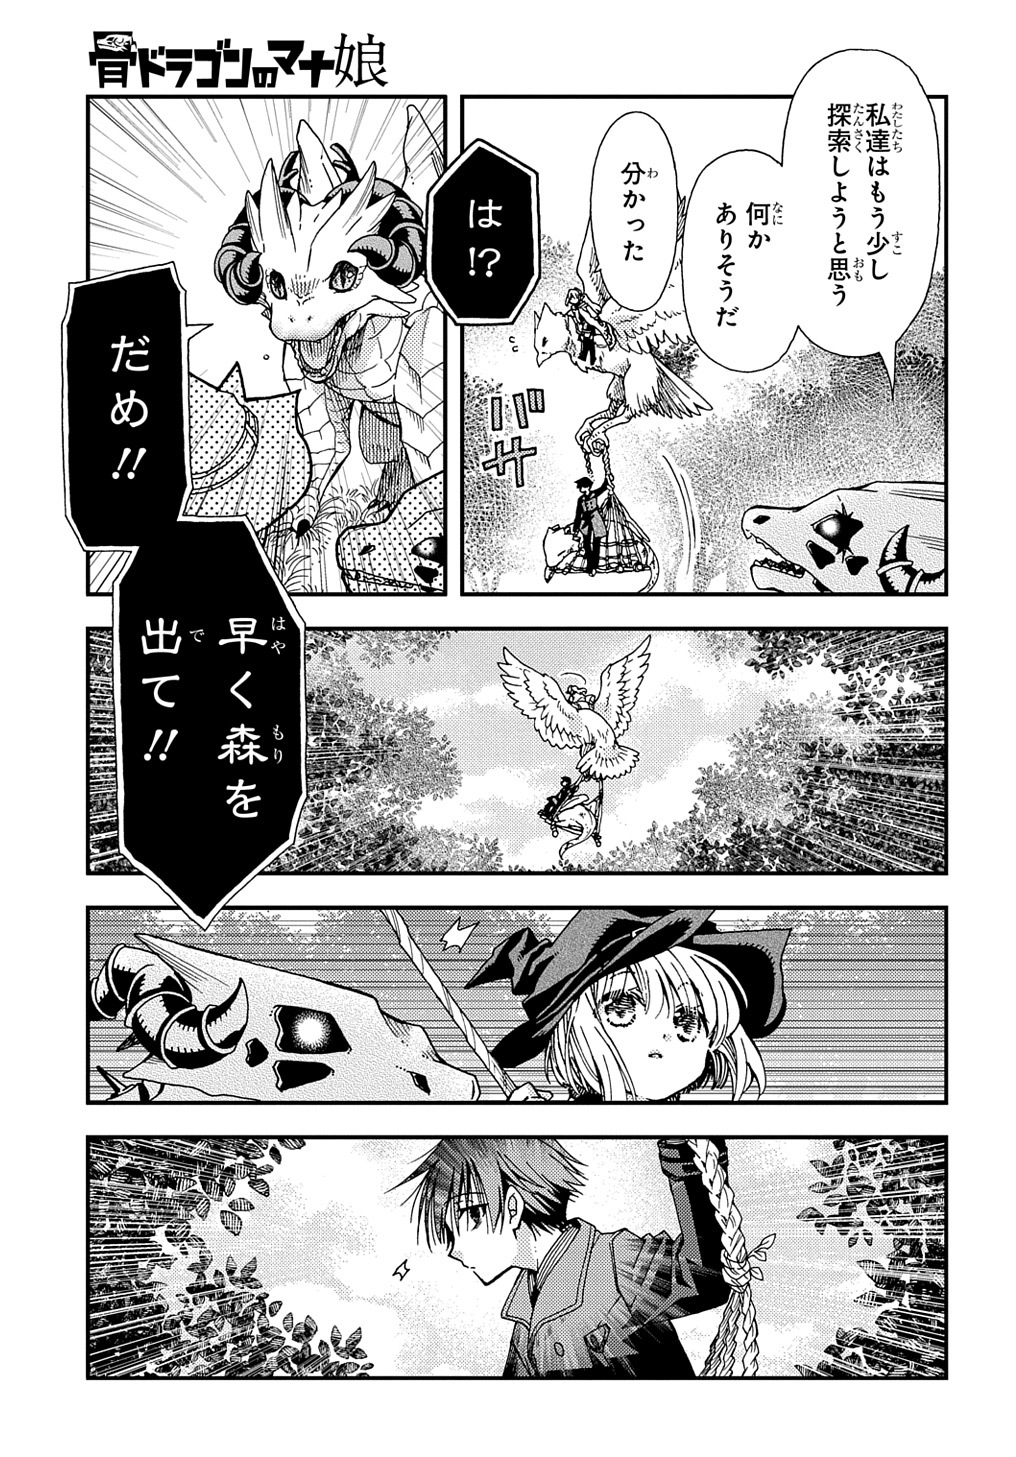 Hone Dragon no Mana Musume - Chapter 29.2 - Page 3